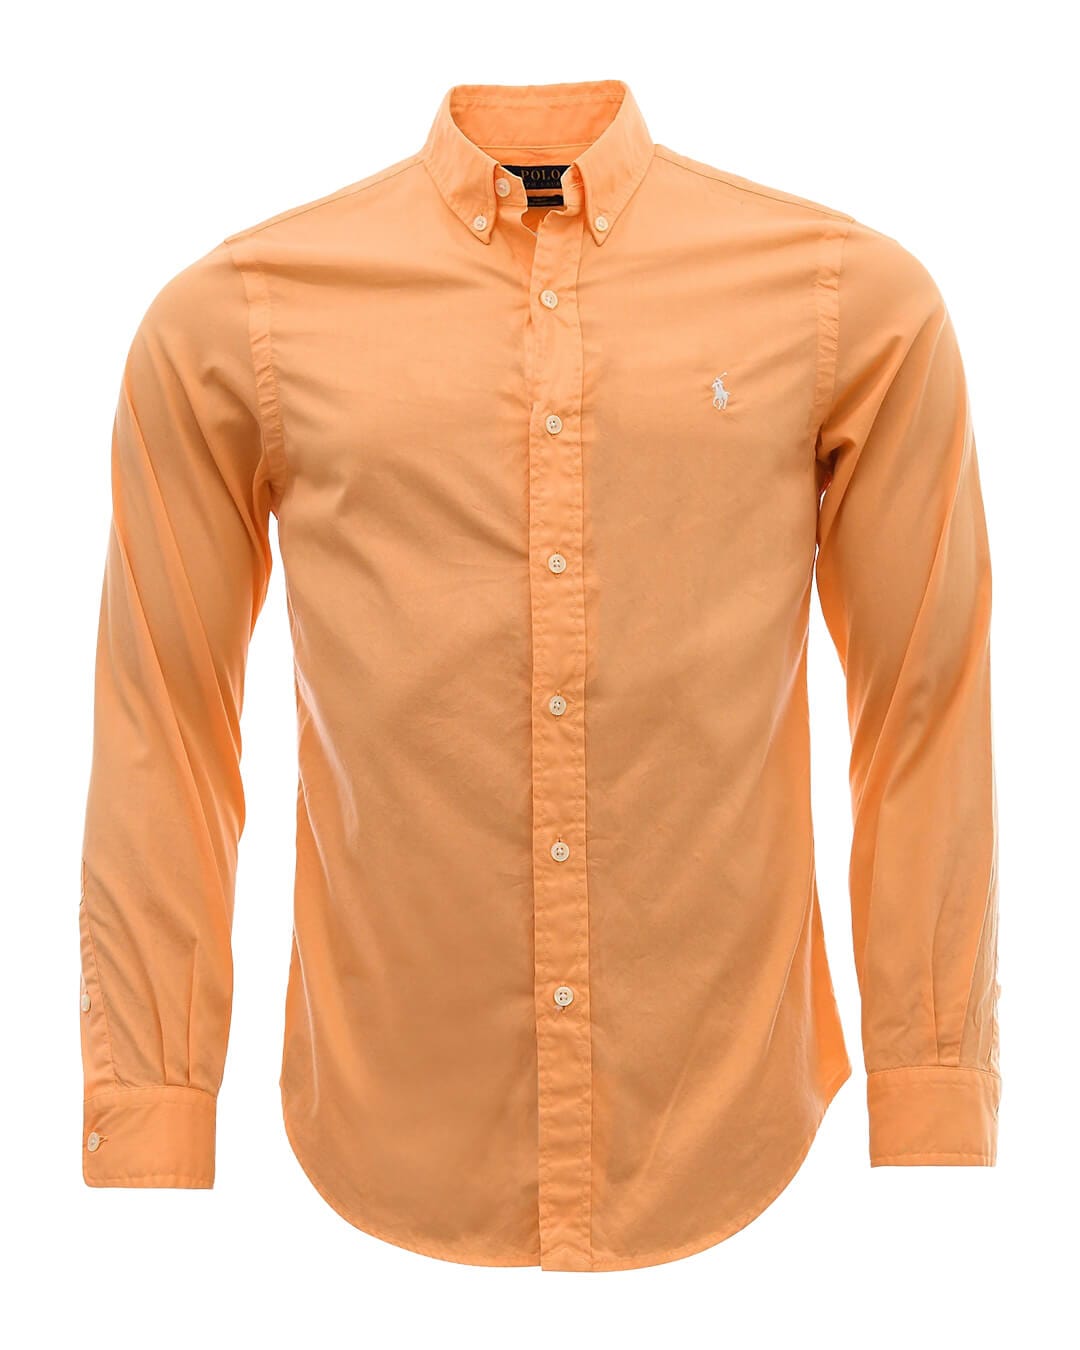 Polo Ralph Lauren Shirts Polo Ralph Lauren Long Sleeved Orange Sport Shirt